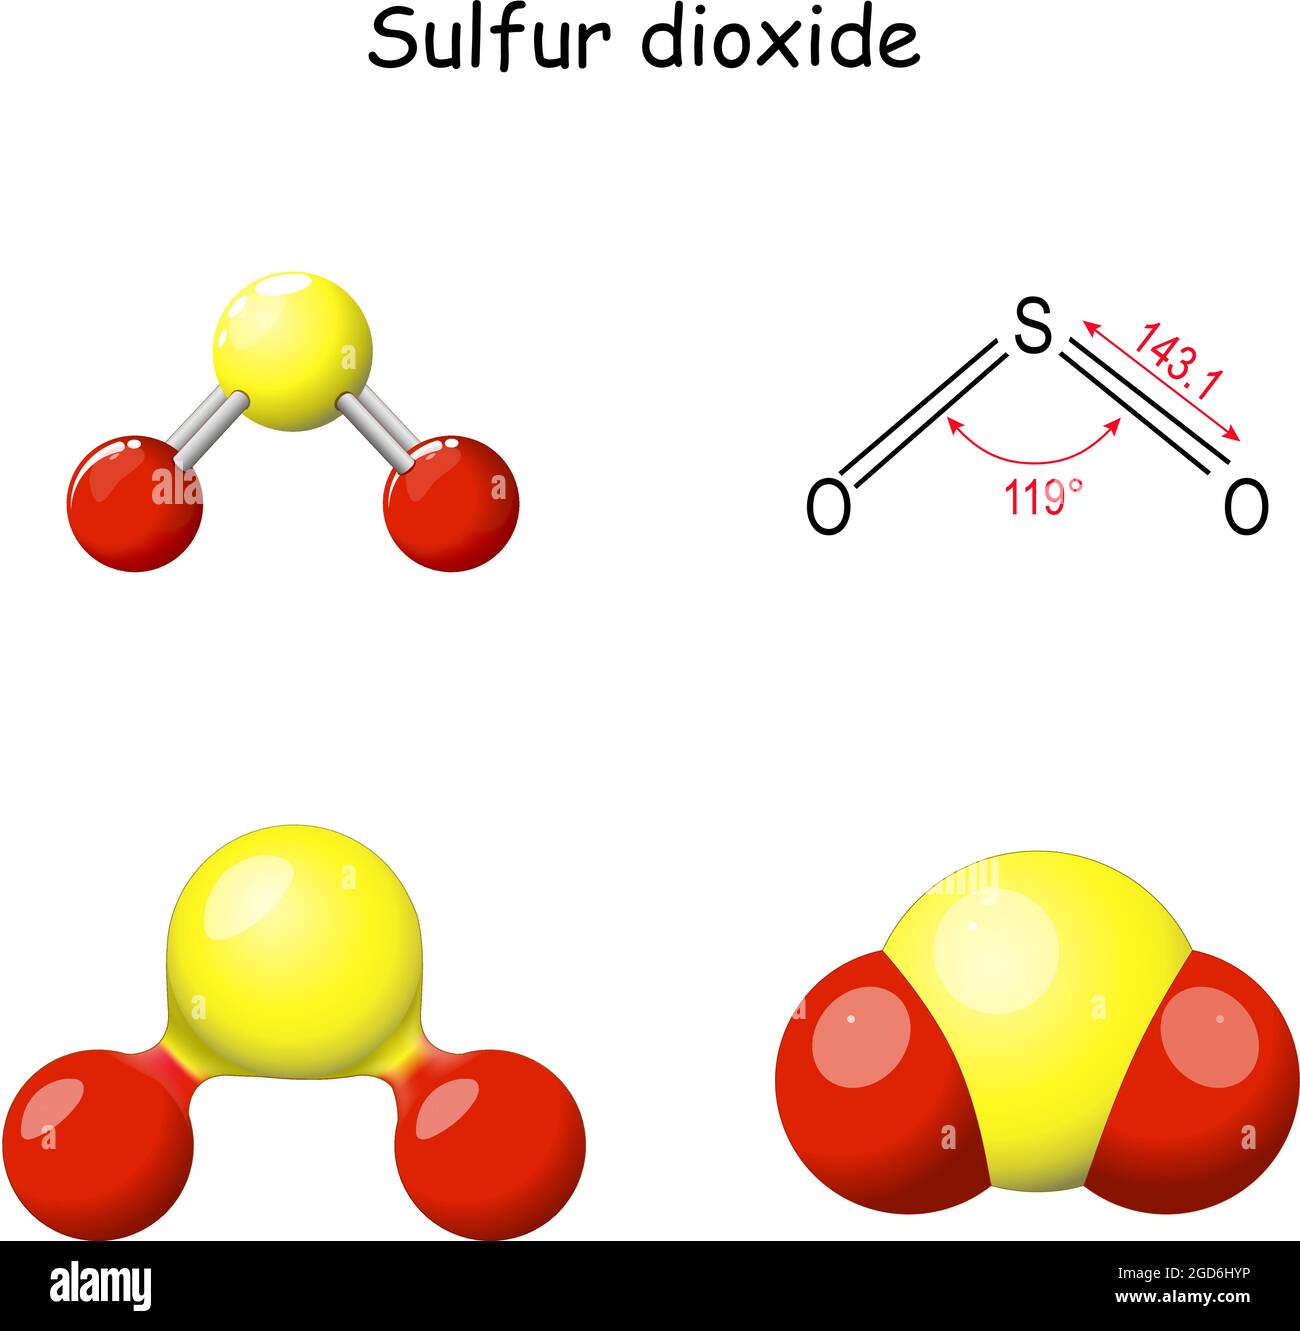 Schwefeldioxid-Molekül. Strukturelle chemische Formel von Schwefeldioxid. SO2-Molekularmodell. Toxisches Gas, das durch vulkanische Aktivität freigesetzt wird. Chemie. Stock Vektor